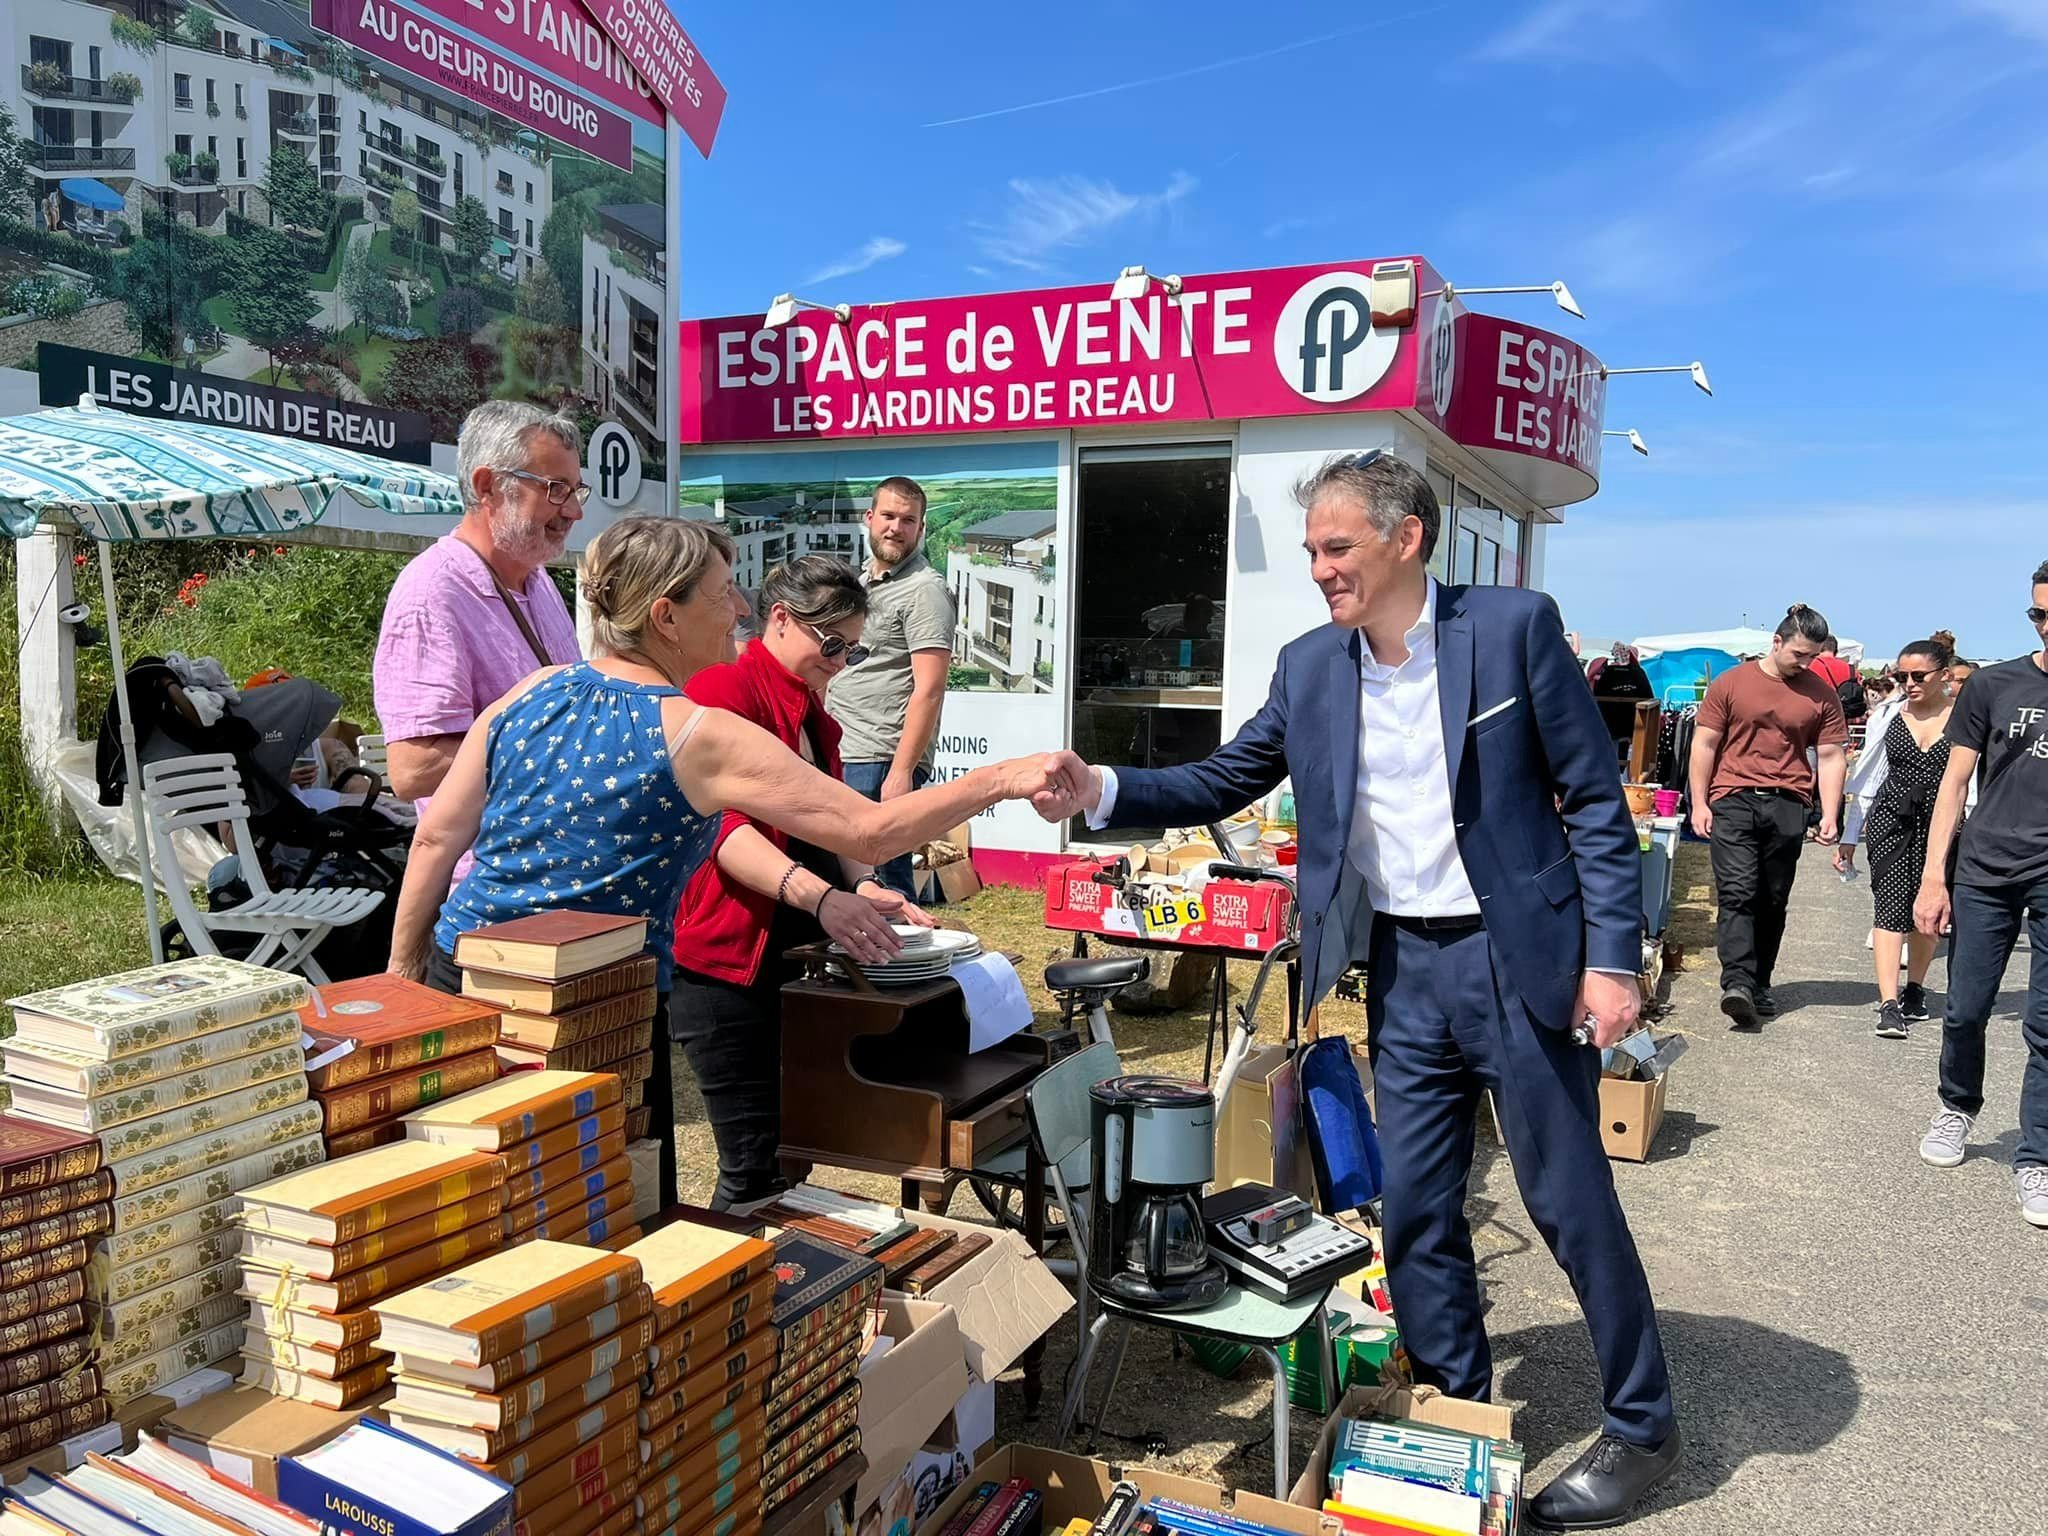 Réau (Seine-et-Marne), ce week-end. Olivier Faure, premier secrétaire du Parti socialiste, au contact des habitants de sa circonscription, la 11e de Seine-et-Marne, où il est candidat. DR